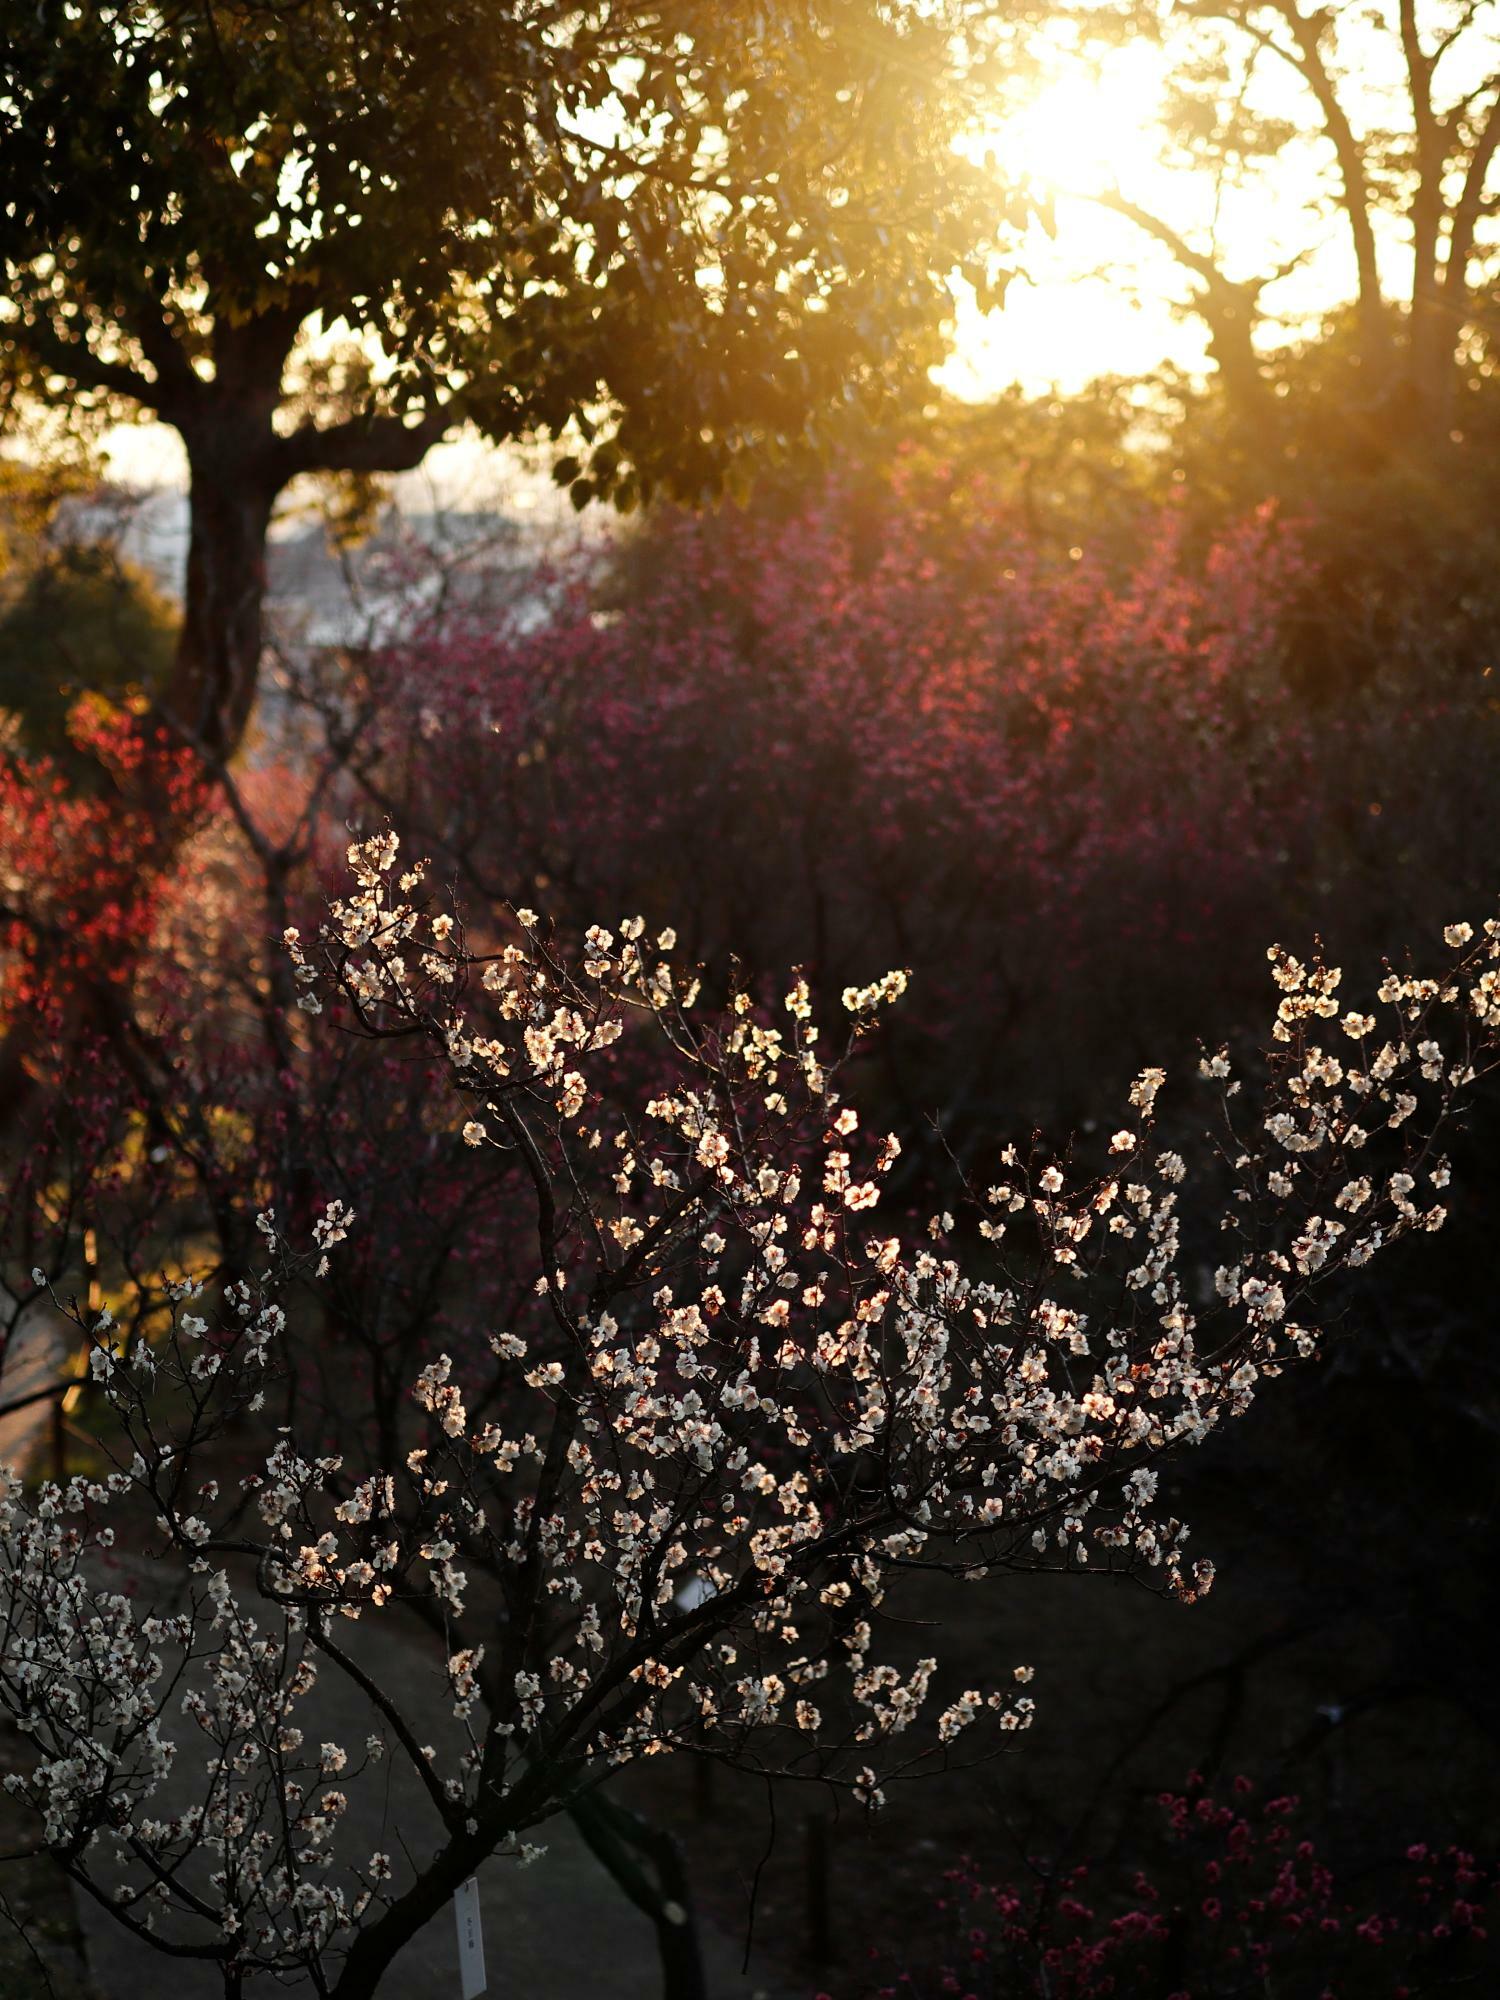 逆光で全体的には暗いものの梅の花に光が透過していて美しい。